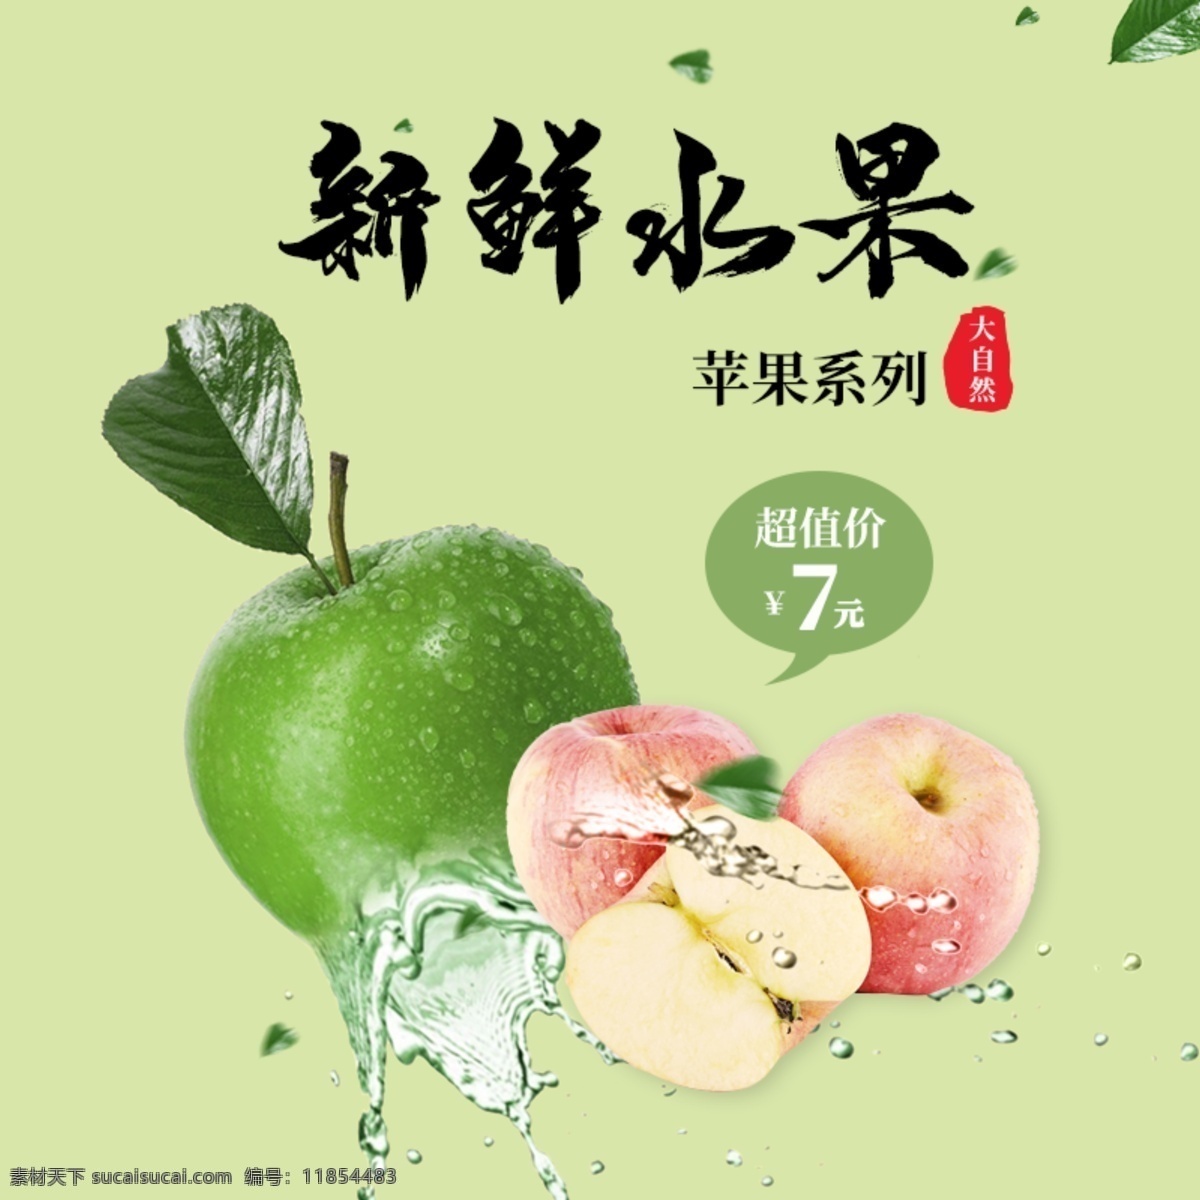 新鲜 水果 苹果 青苹果 主 图 新鲜水果 主图 新鲜水果苹果 苹果主图